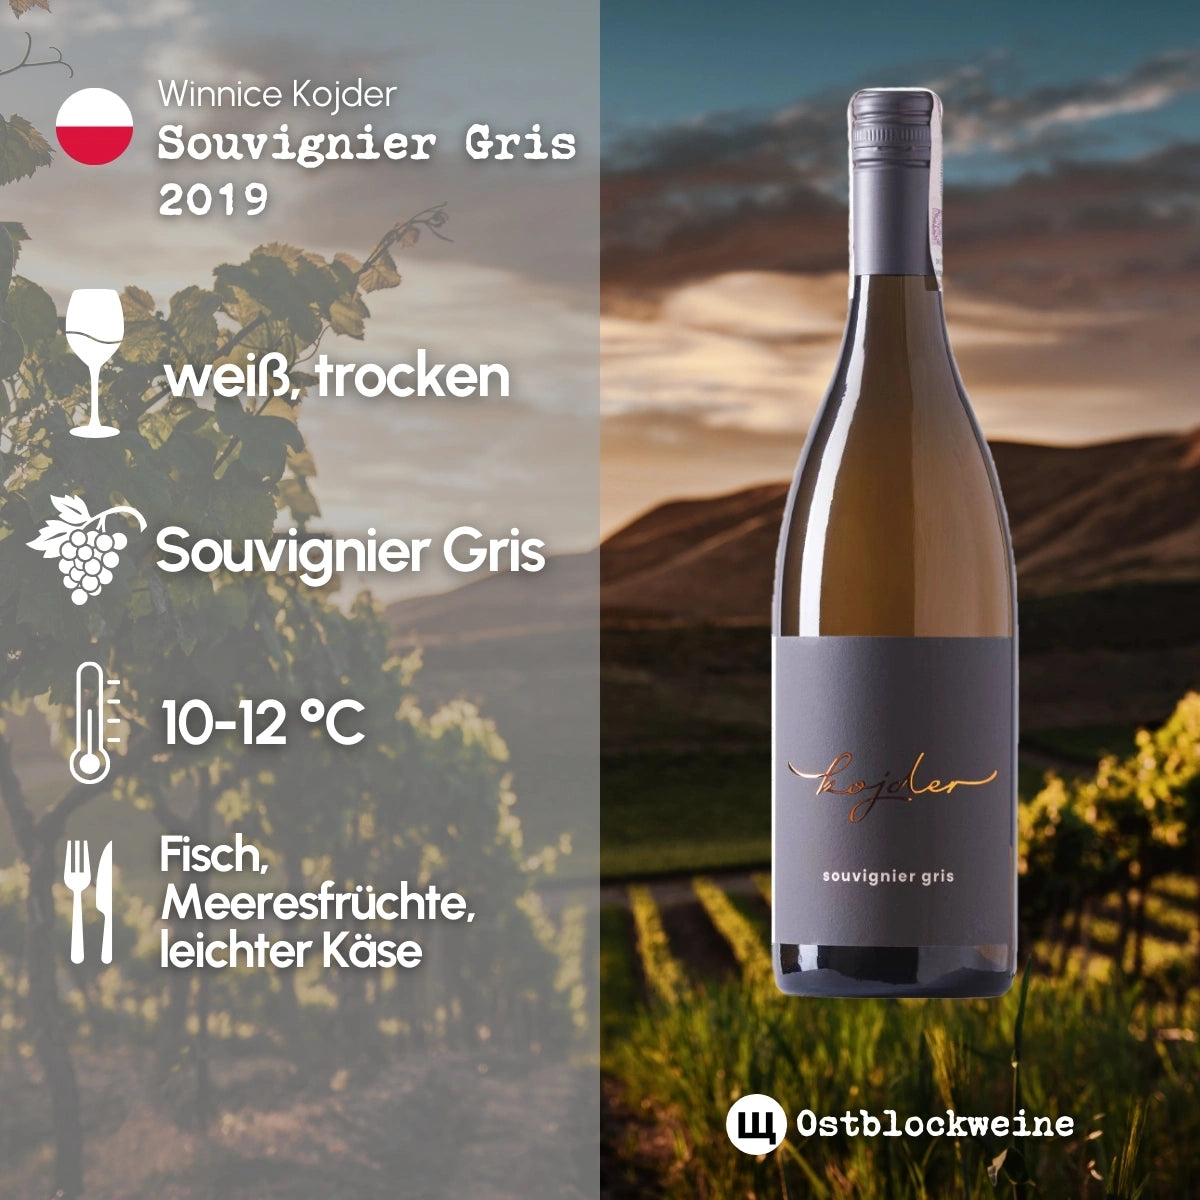 Souvignier Gris 2019 - Weißwein trocken aus Polen - Winnice Kojder - ostblockweine